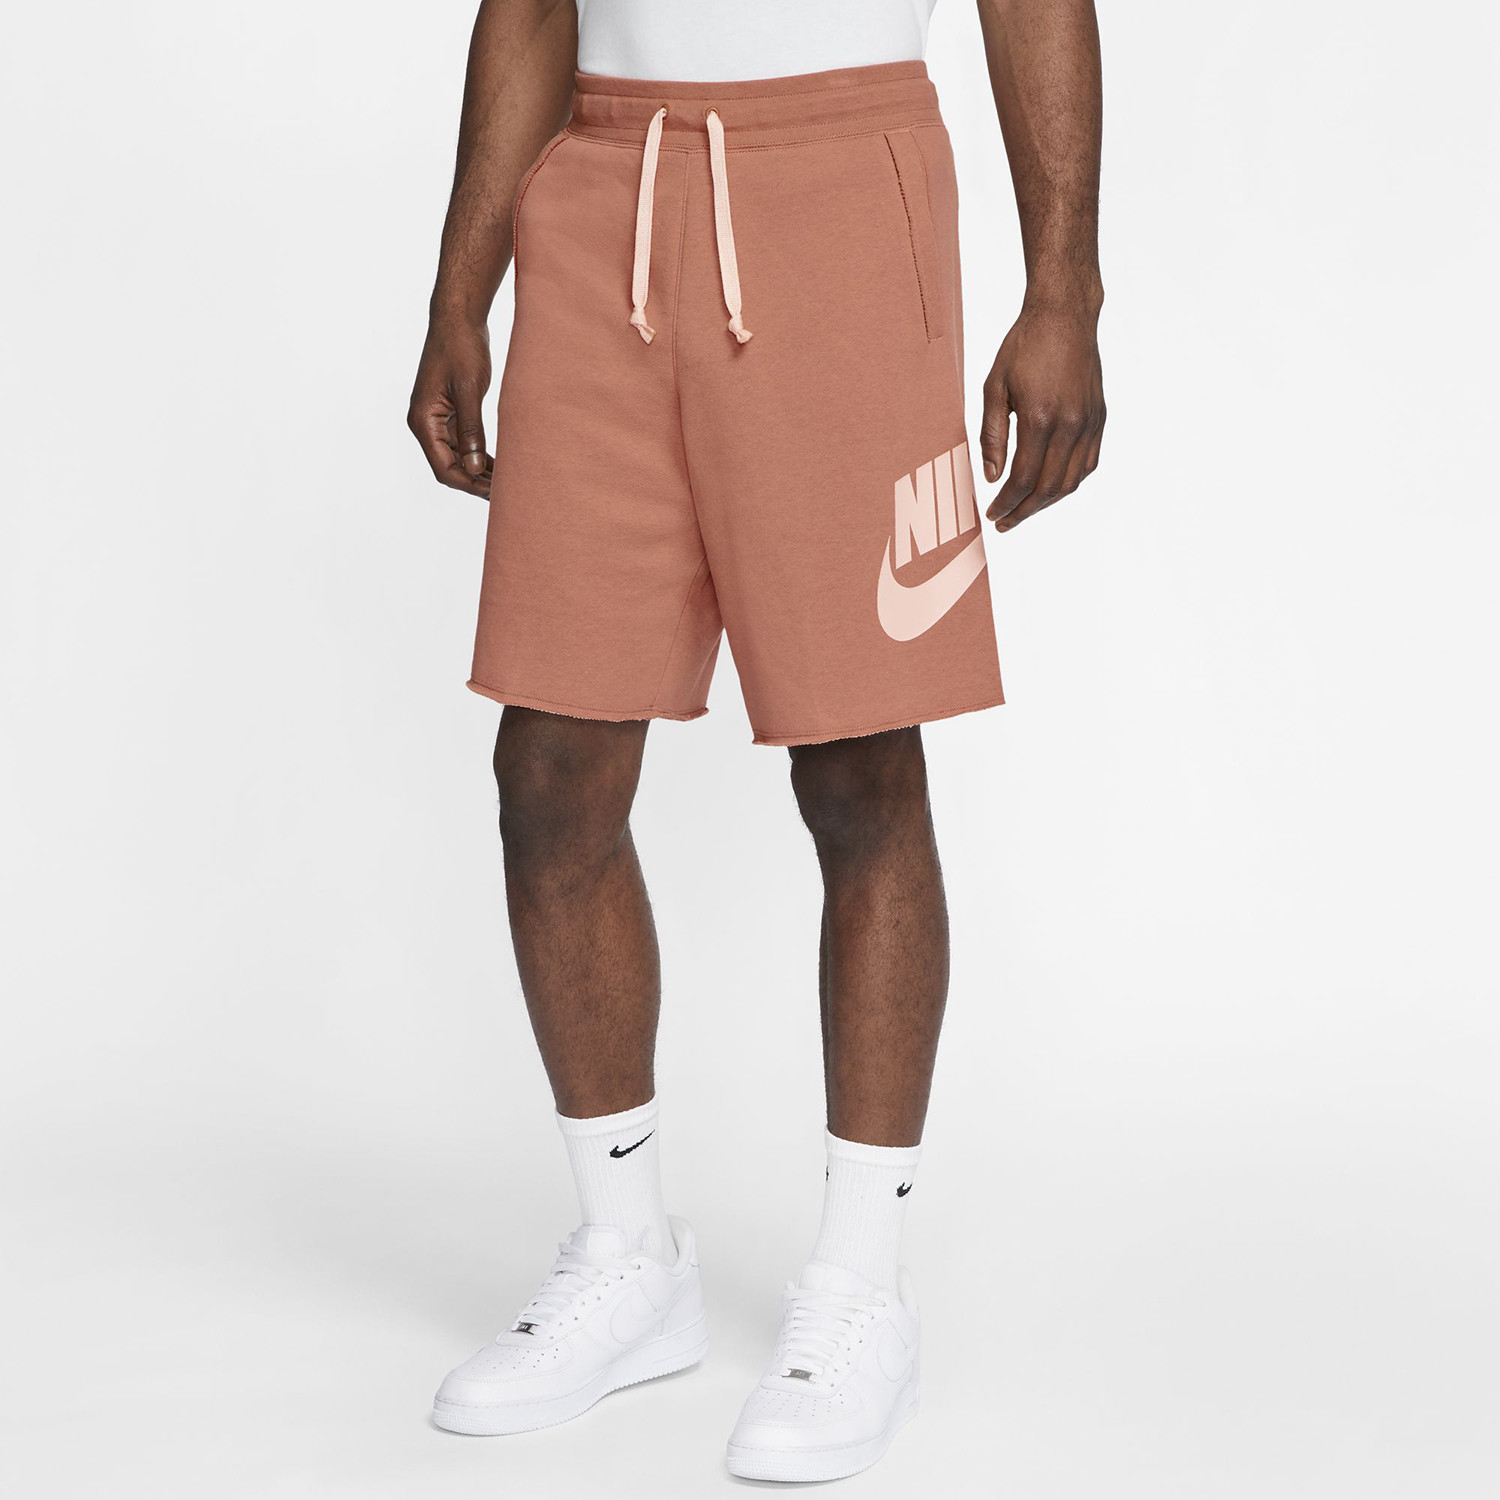 Nike Sportswear Men’s Shorts